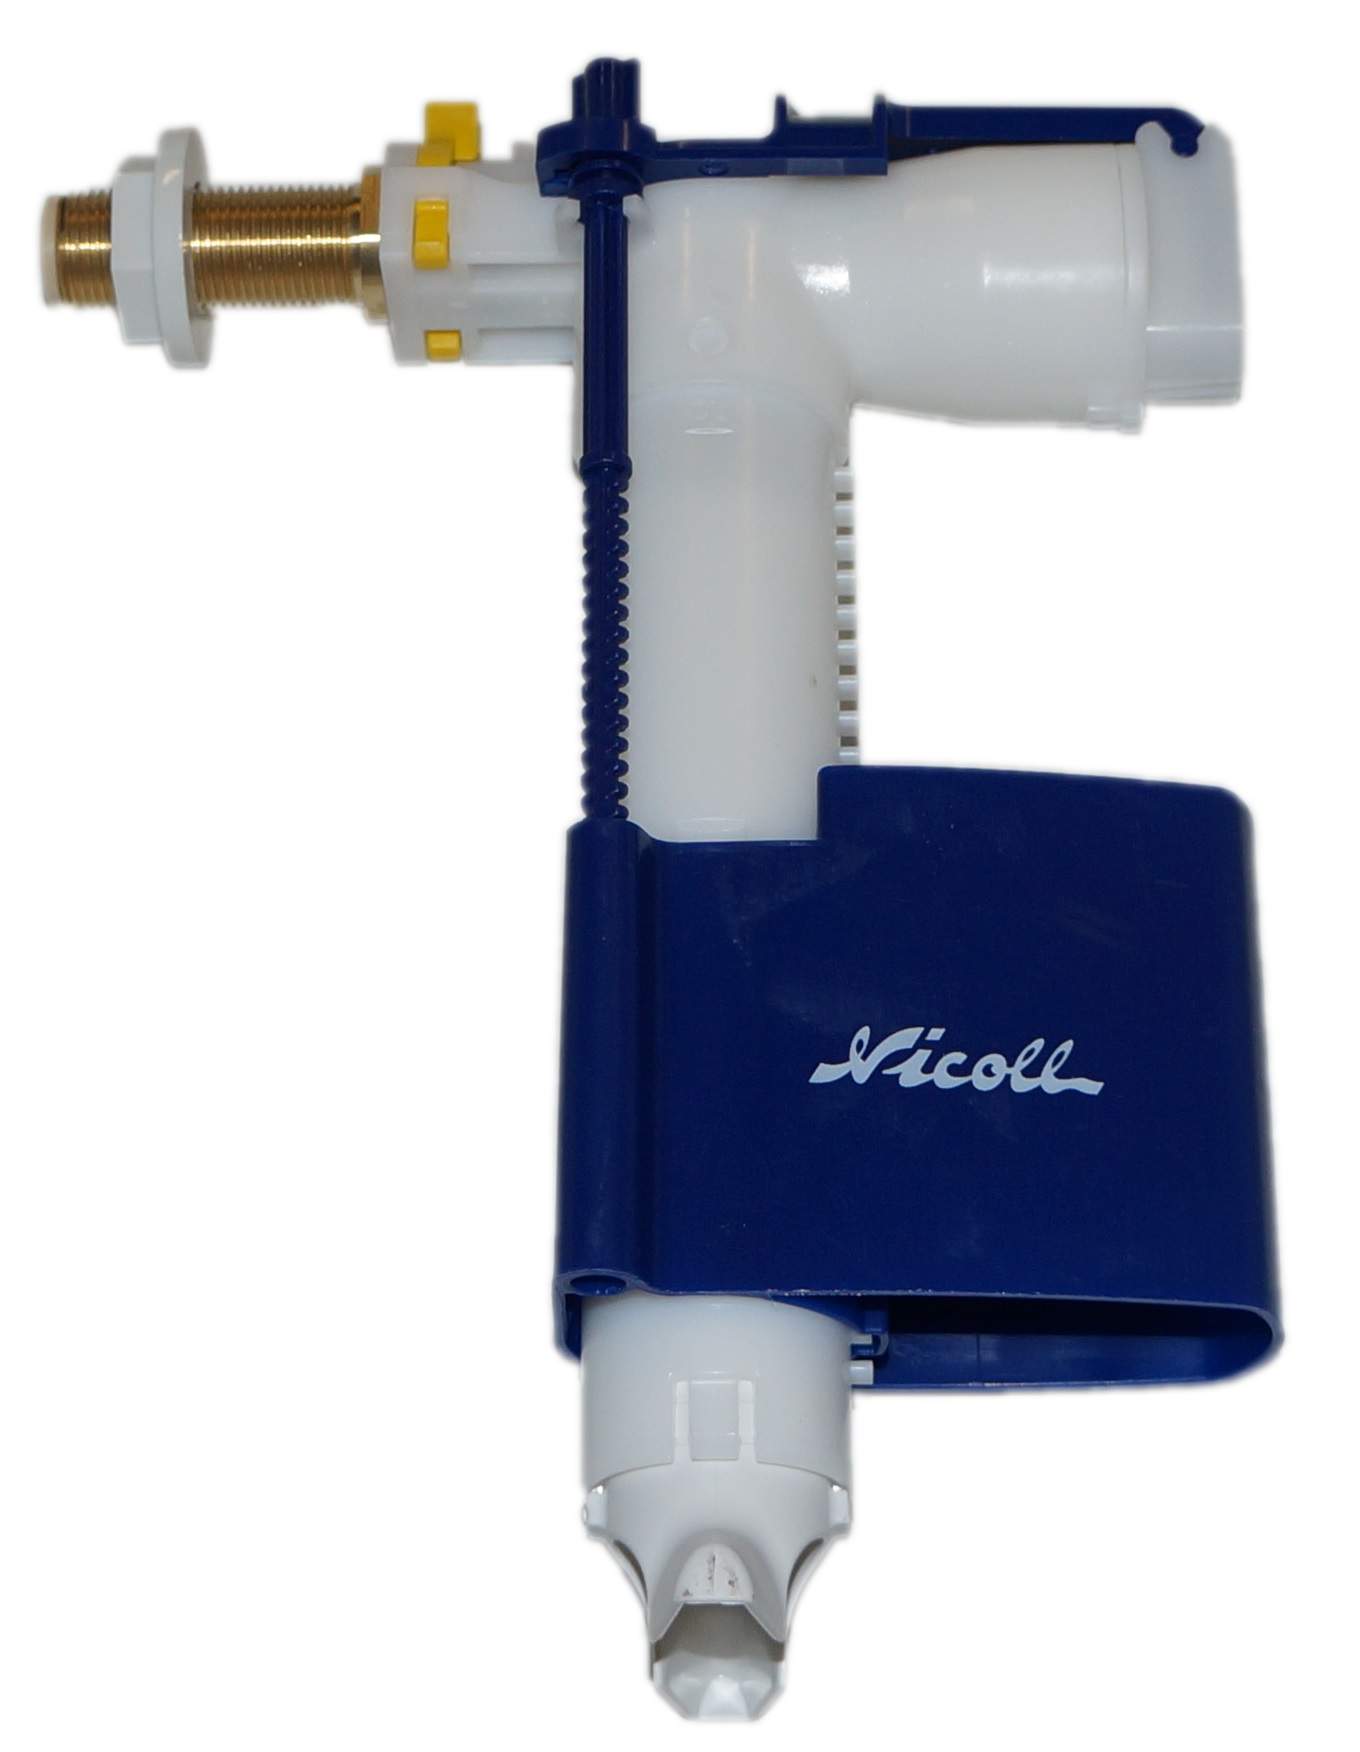 Válvula de flotador con soporte para el marco de soporte Sas/Nicoll